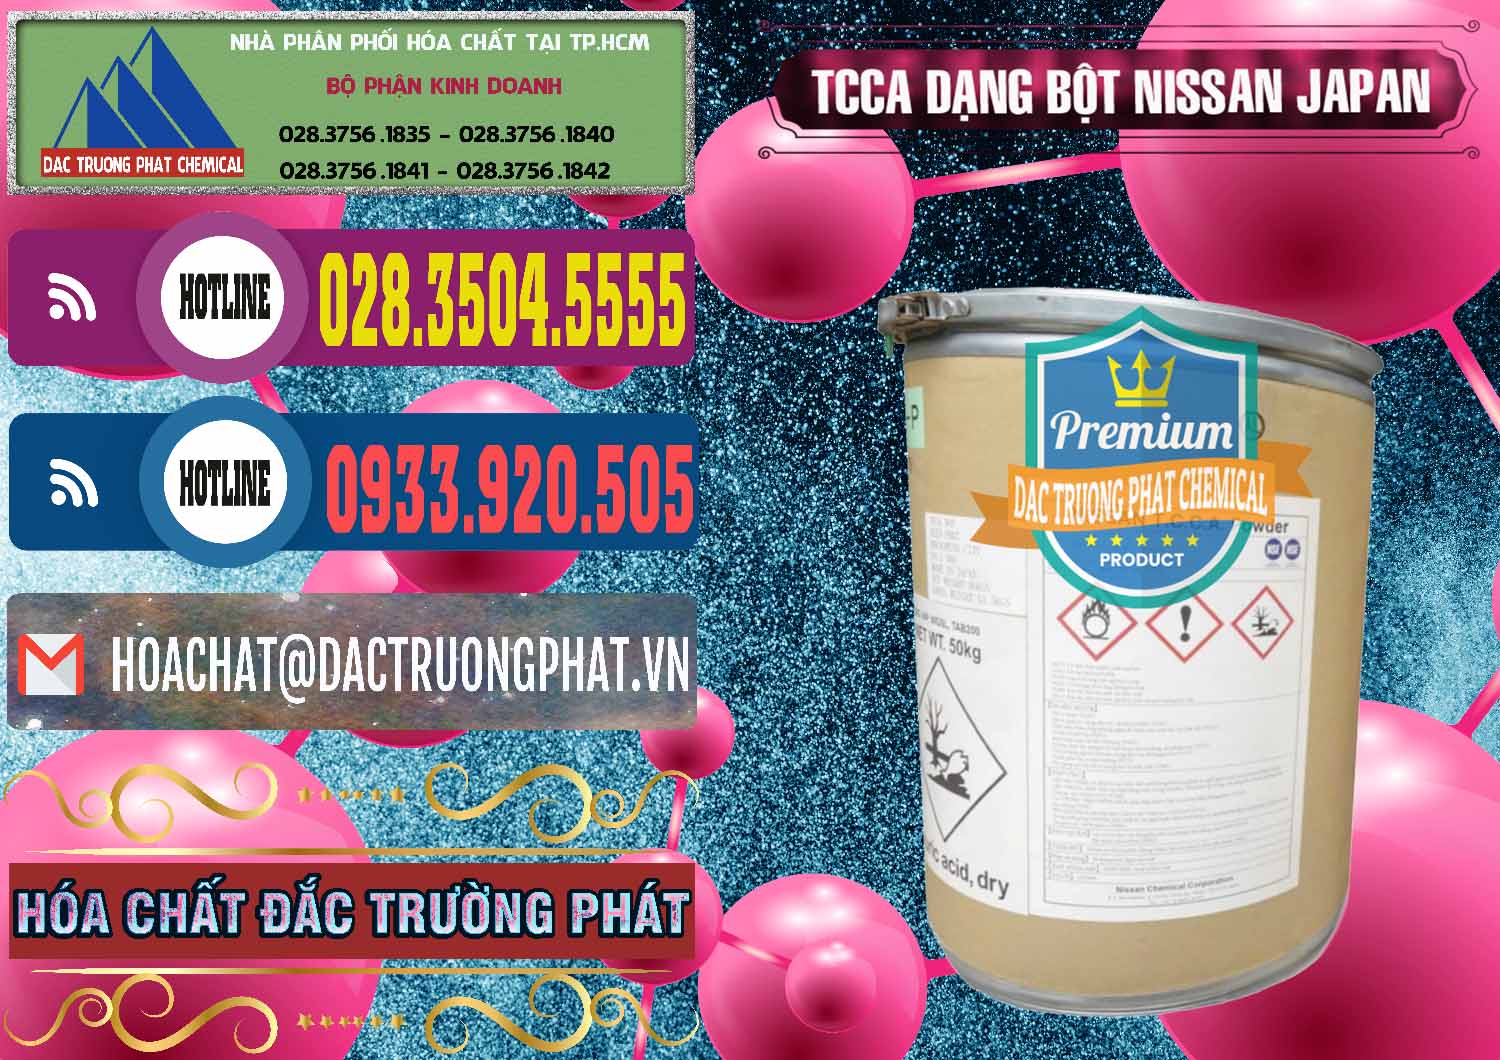 Nơi chuyên bán & cung cấp TCCA - Acid Trichloroisocyanuric 90% Dạng Bột Nissan Nhật Bản Japan - 0375 - Nơi chuyên cung cấp - kinh doanh hóa chất tại TP.HCM - muabanhoachat.com.vn